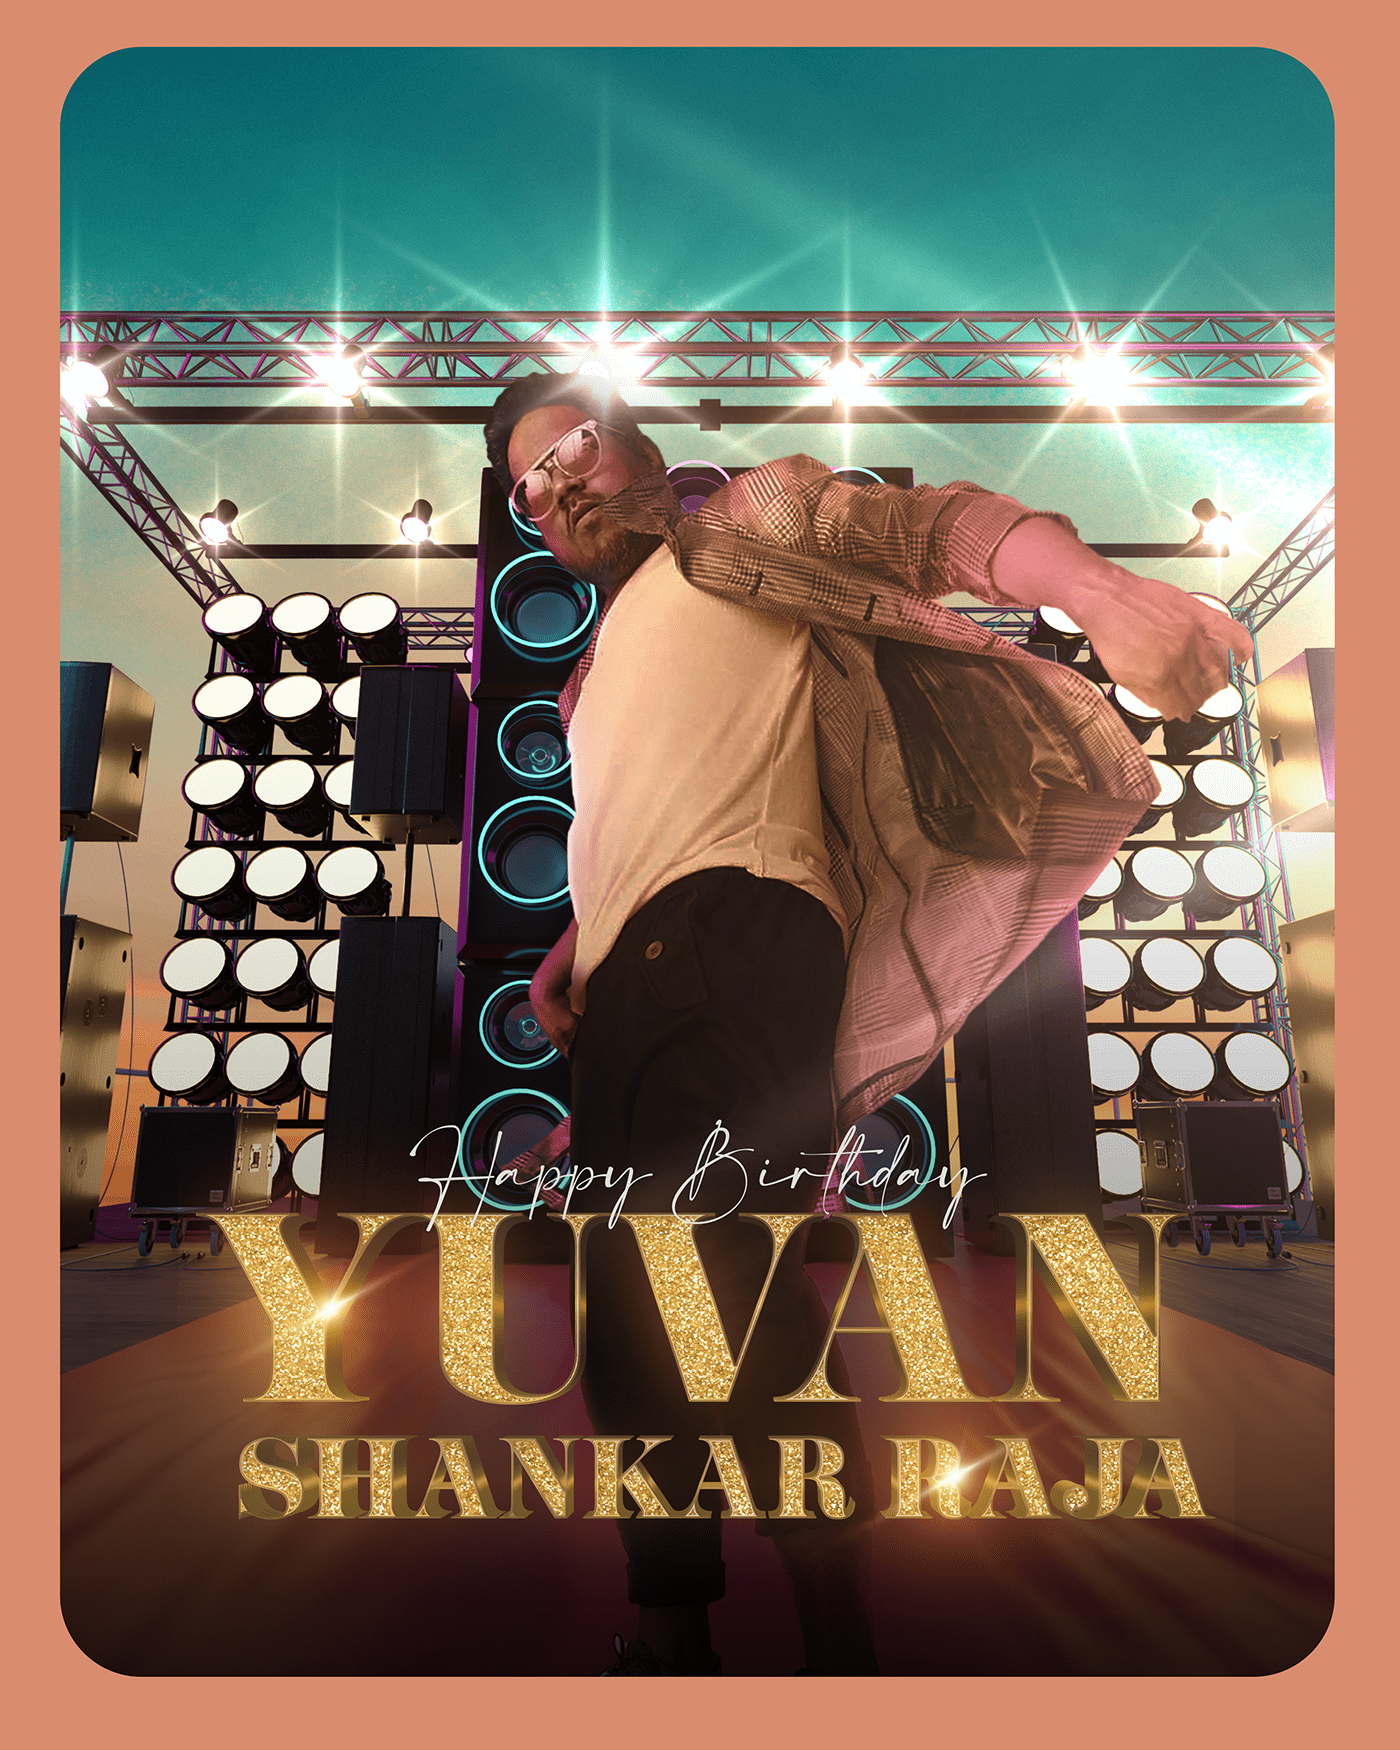 yuvan Yuvan Shankar Raja Poster Design poster Social media post Graphic Designer brand identity design